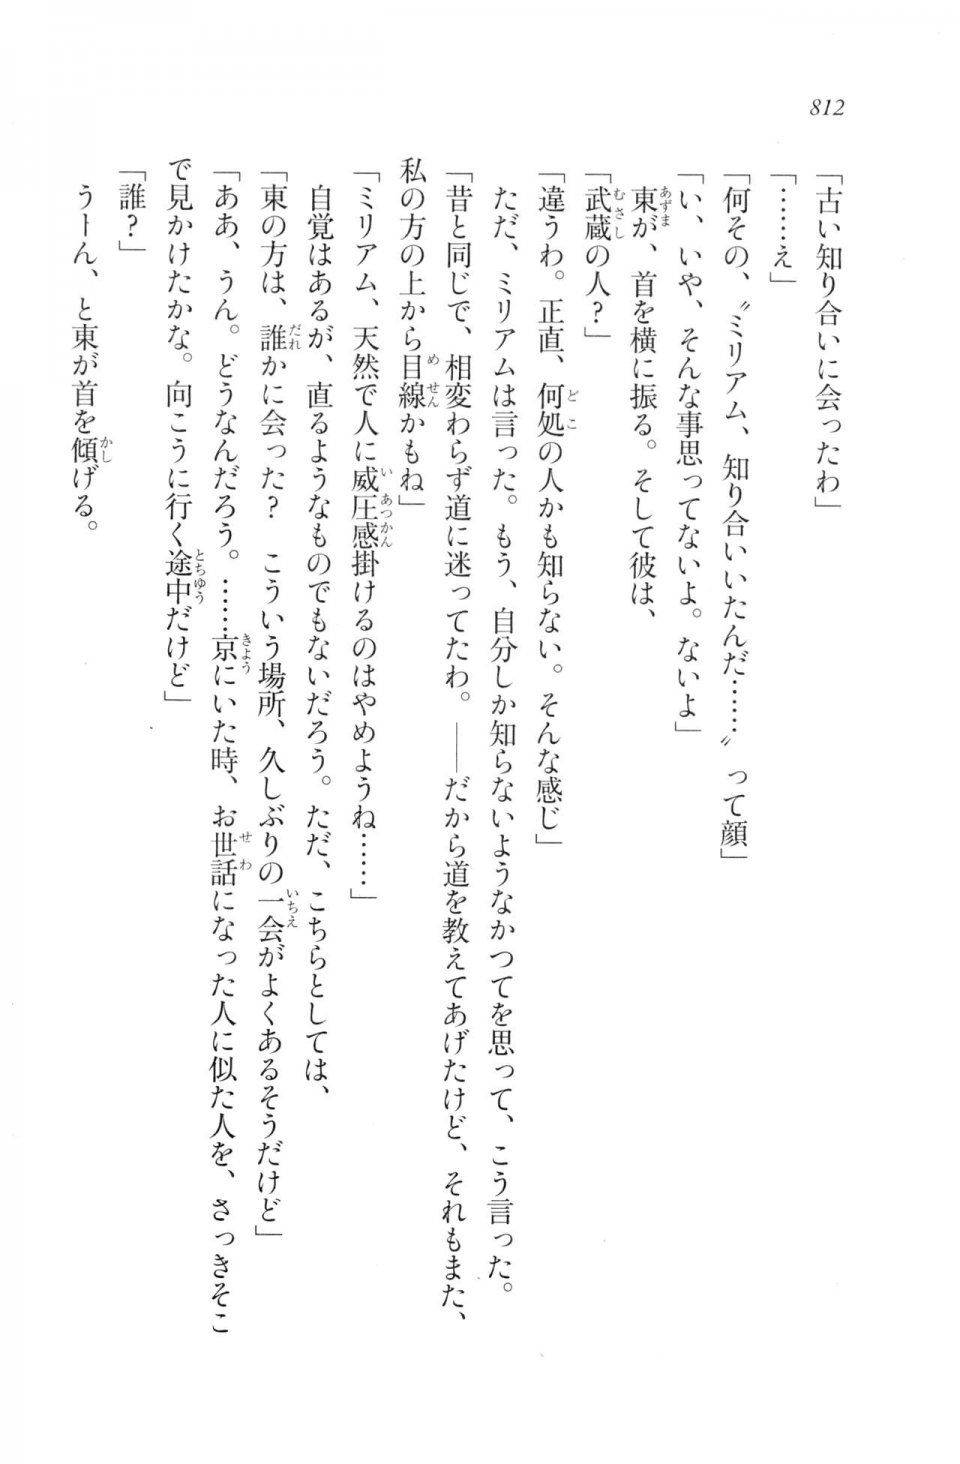 Kyoukai Senjou no Horizon LN Vol 20(8B) - Photo #812